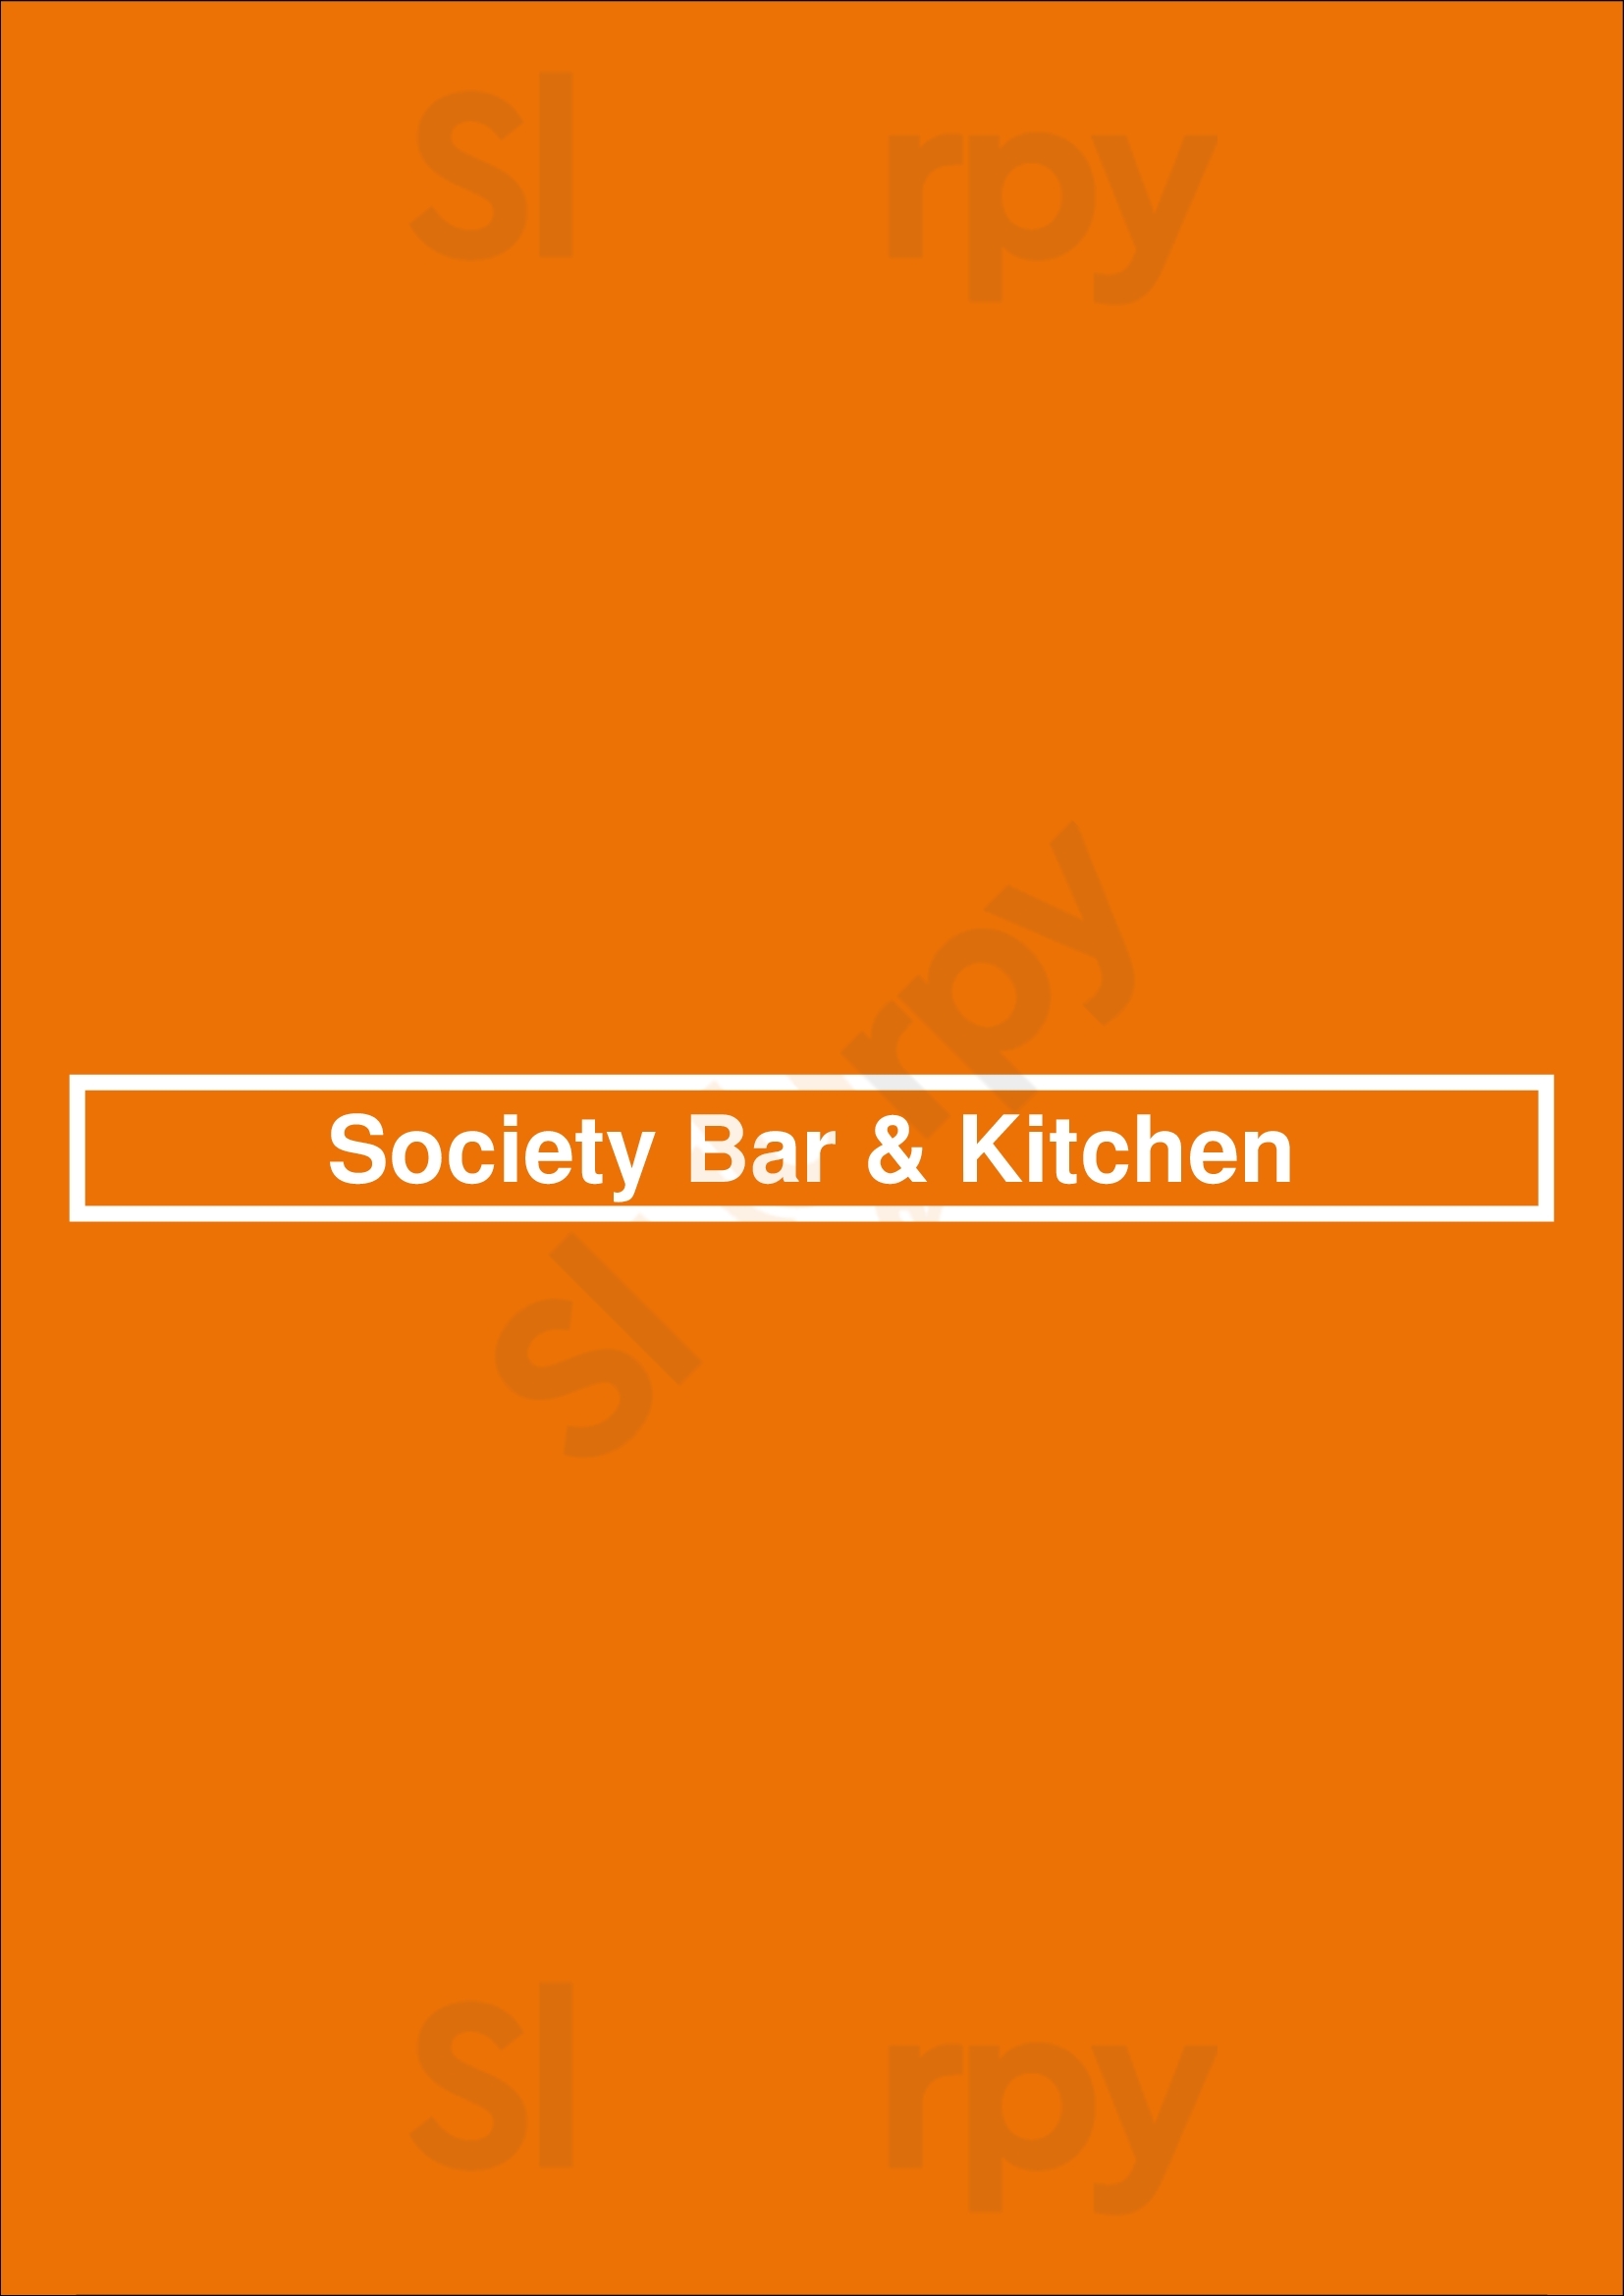 Society Bar & Kitchen Perth Menu - 1